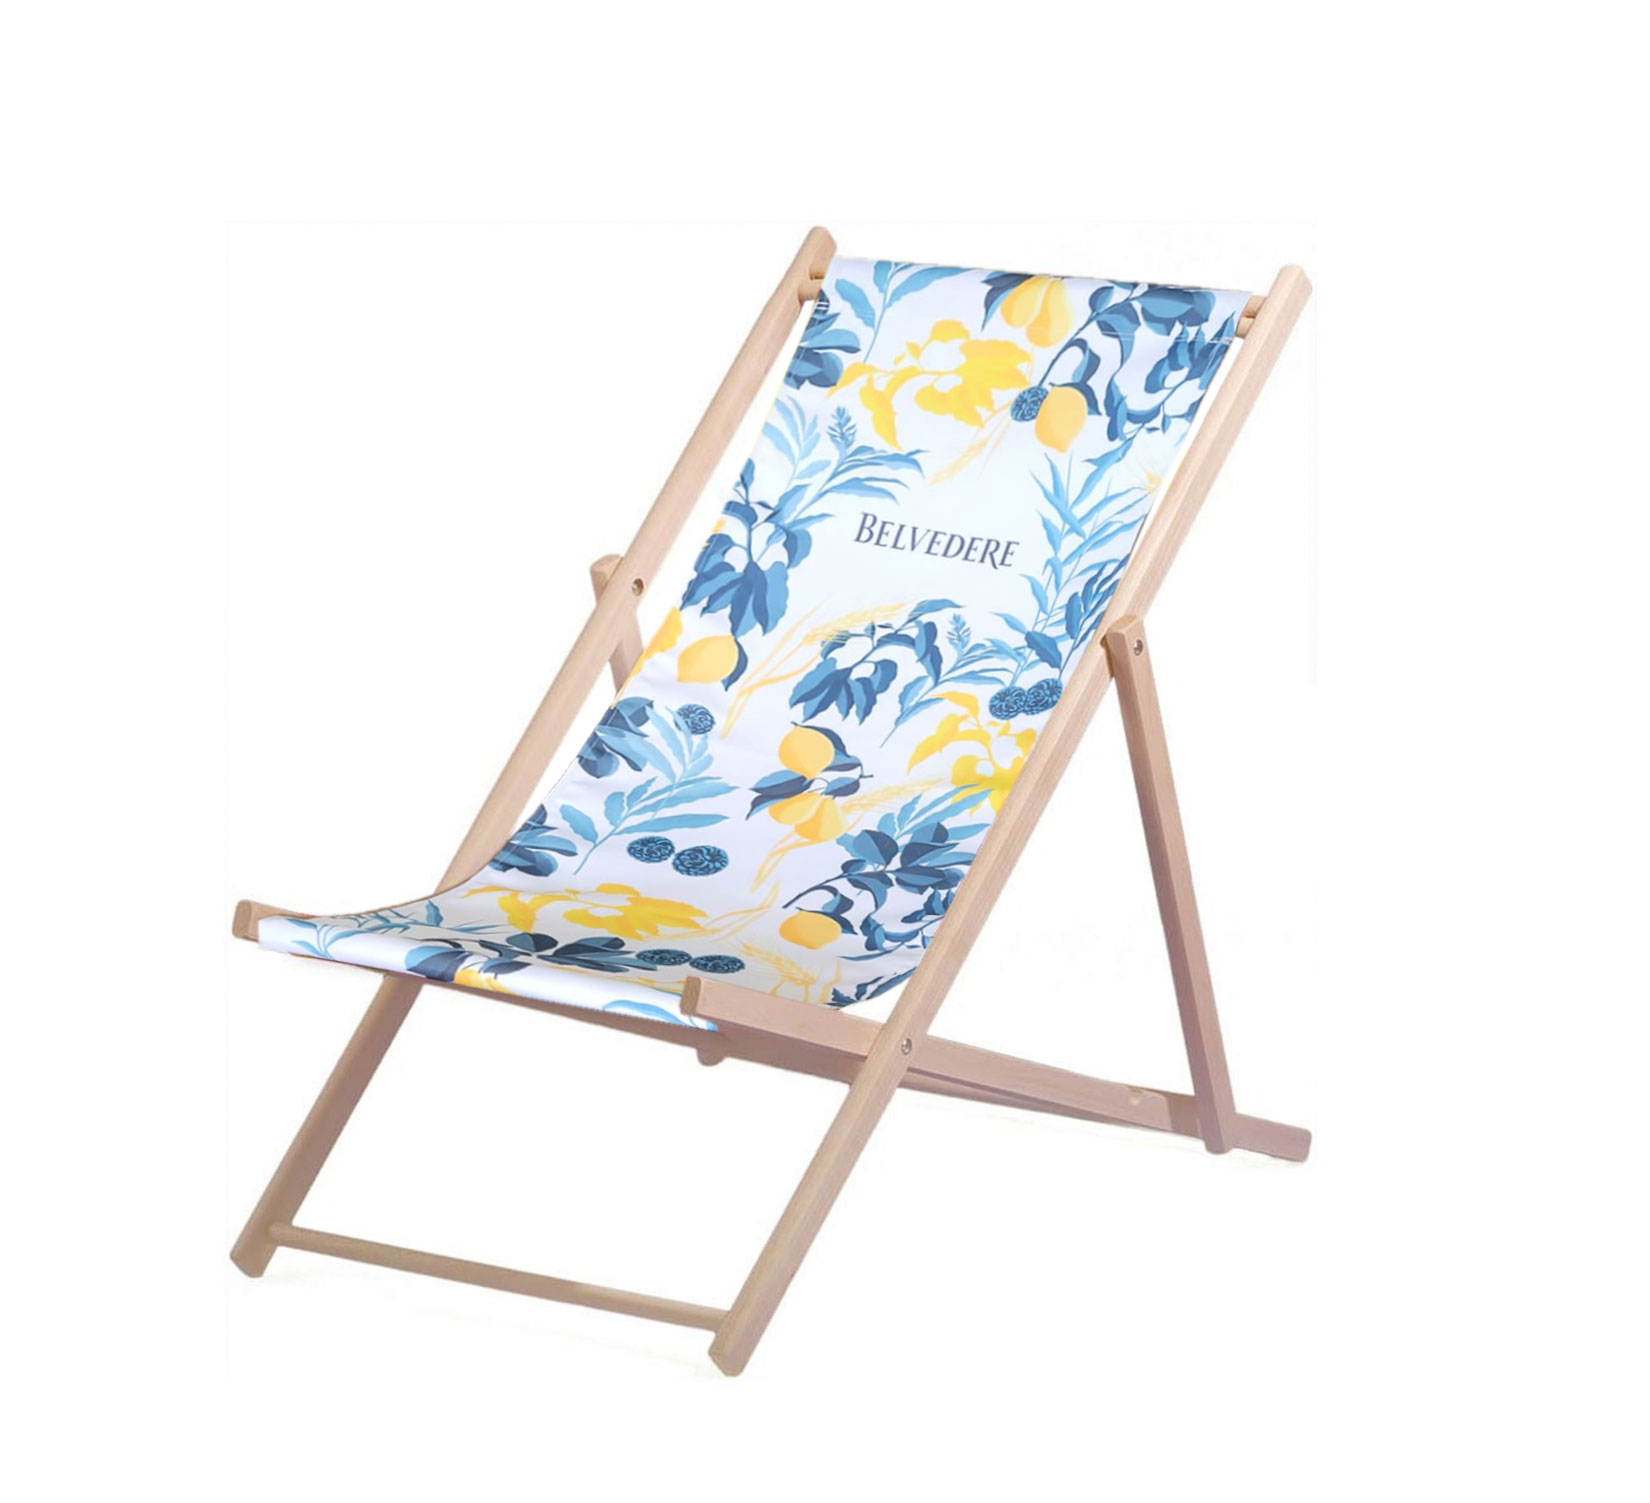 Belvedere Liegestuhl Stuhl aus Holz Gartenliege Klappstuhl höhenverstellbar blau weiß gelb 